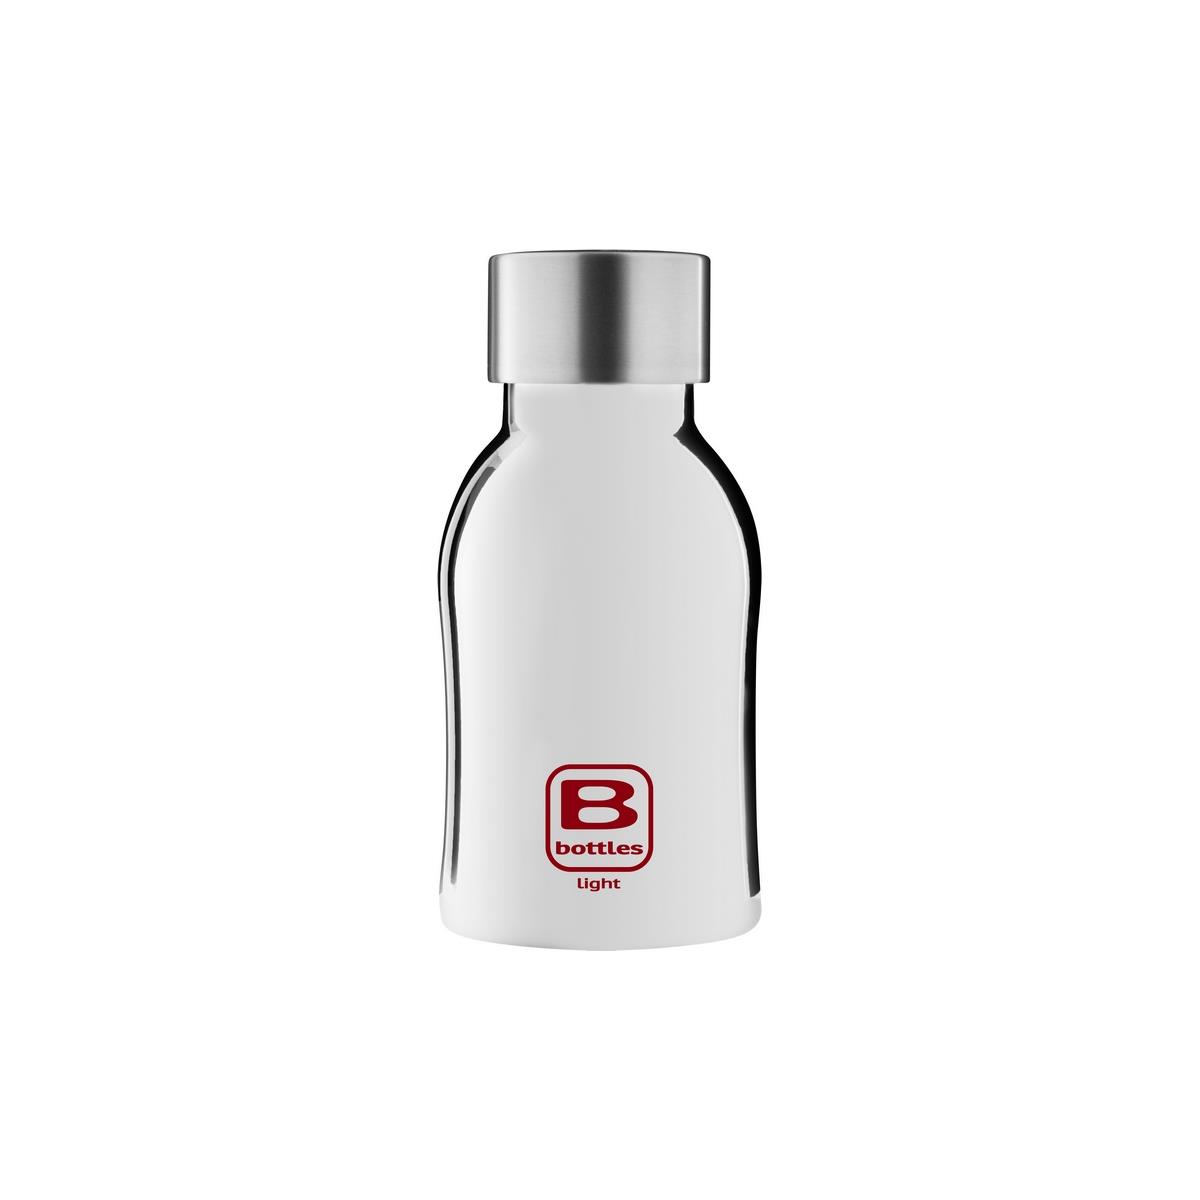 photo B Bottles Light - Silver Lux - 350 ml - Bottiglia in acciaio inox 18/10 ultra leggera e compatta